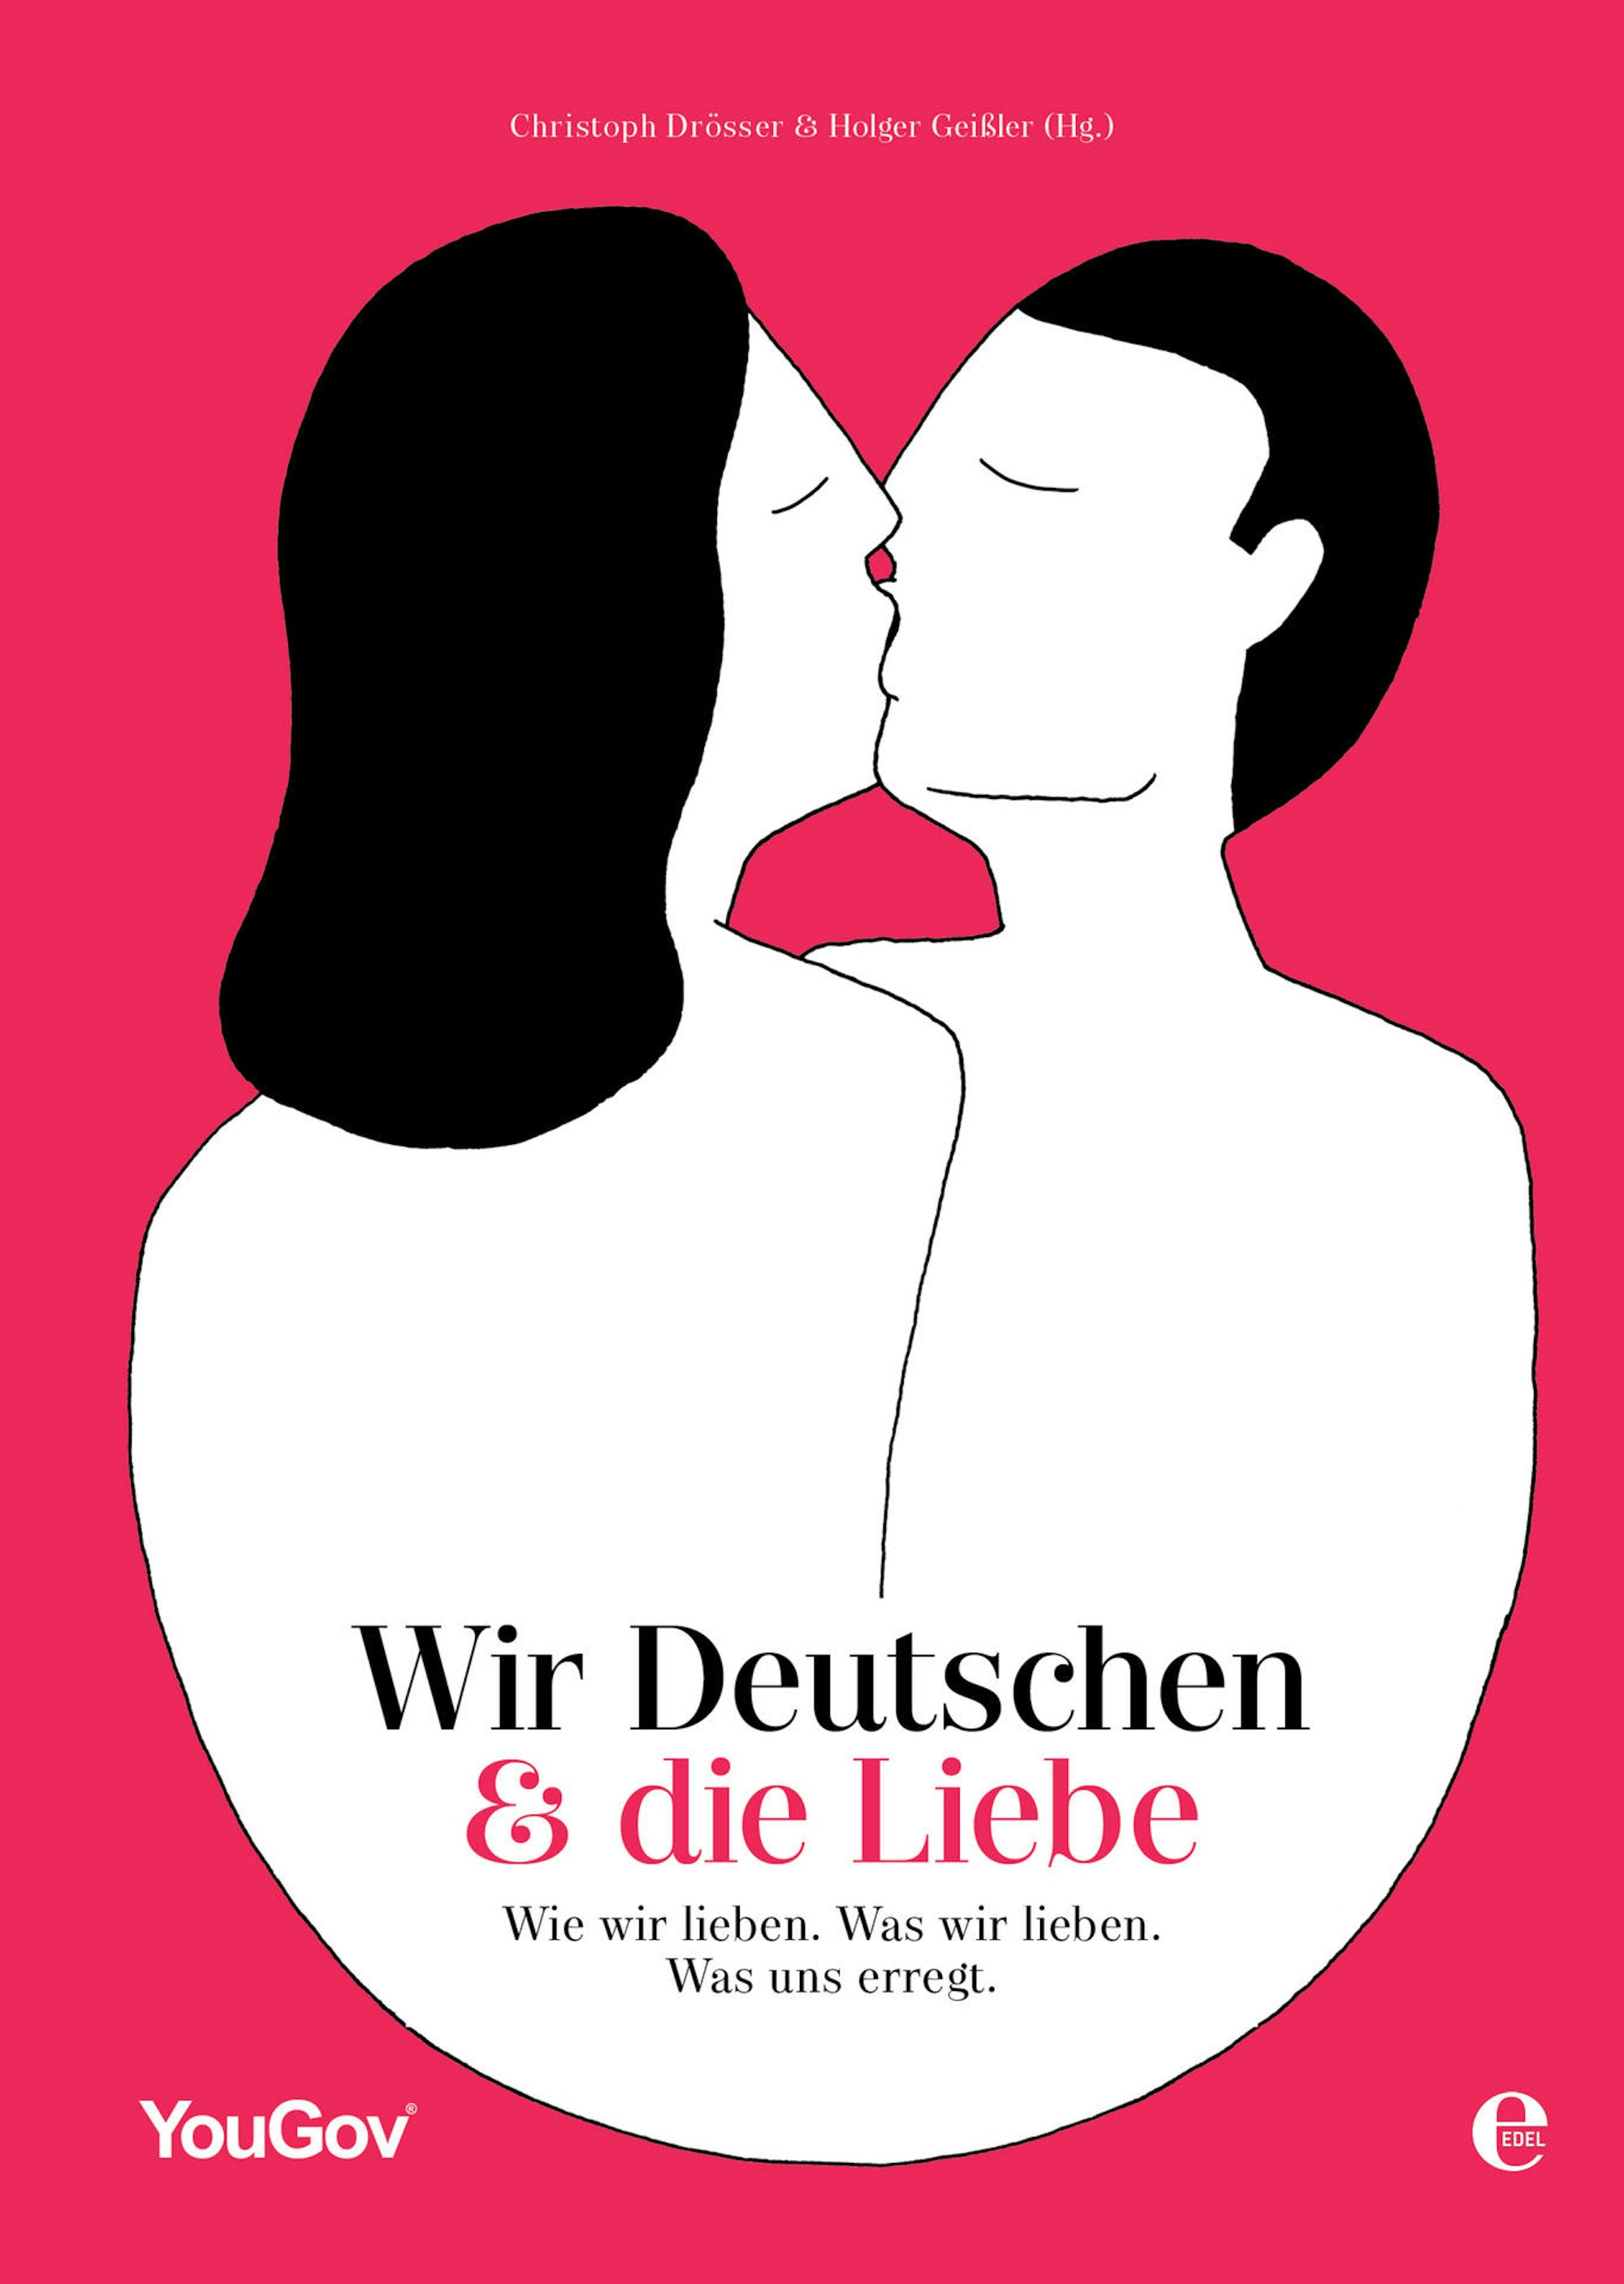 Cover_Wir Deutschen & die Liebe Wie wir lieben. Was wir lieben. Was uns erregt_300dpi